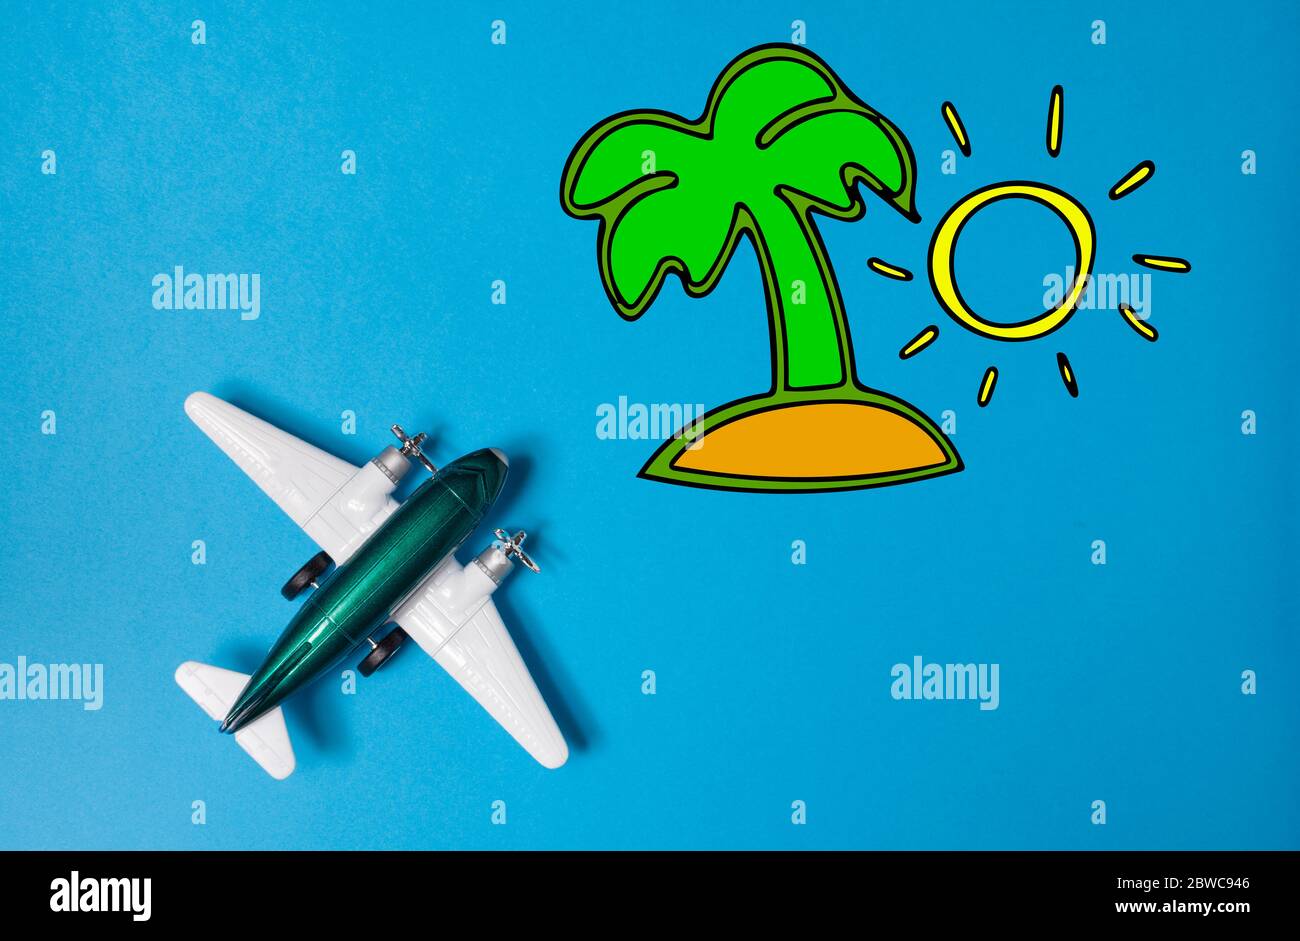 L'aeroplano giocattolo in miniatura e l'isola estiva si ispirano a sfondo blu Foto Stock